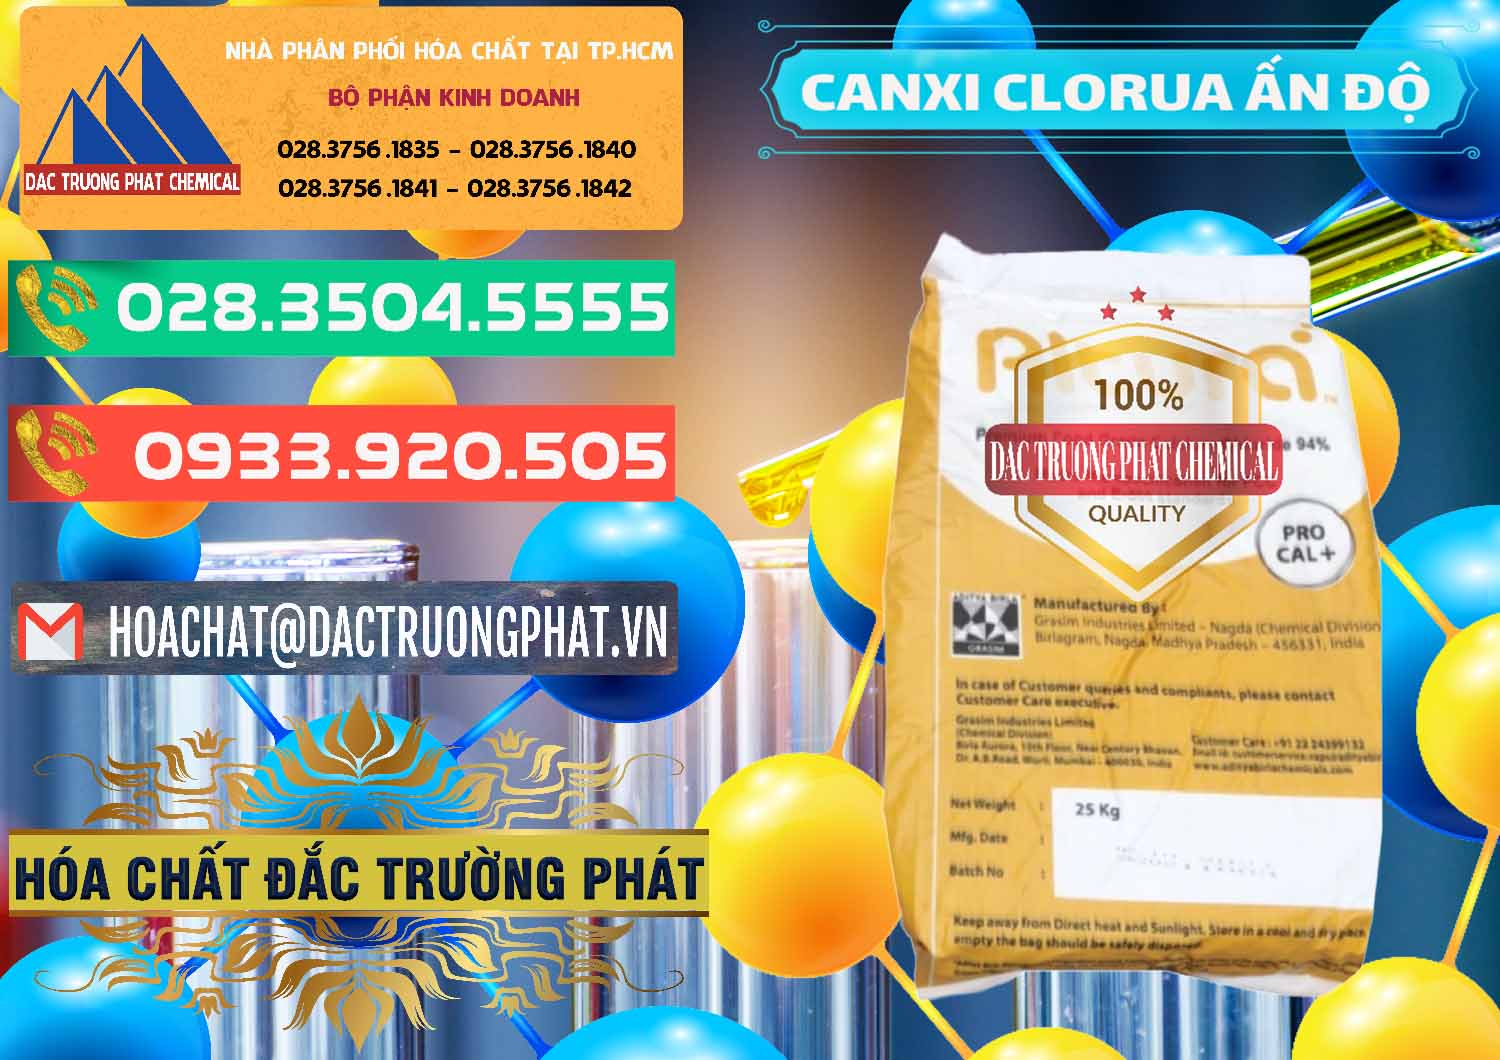 Cty chuyên nhập khẩu _ bán CaCl2 – Canxi Clorua Food Grade Altura Aditya Birla Grasim Ấn Độ India - 0436 - Đơn vị chuyên kinh doanh và cung cấp hóa chất tại TP.HCM - congtyhoachat.com.vn